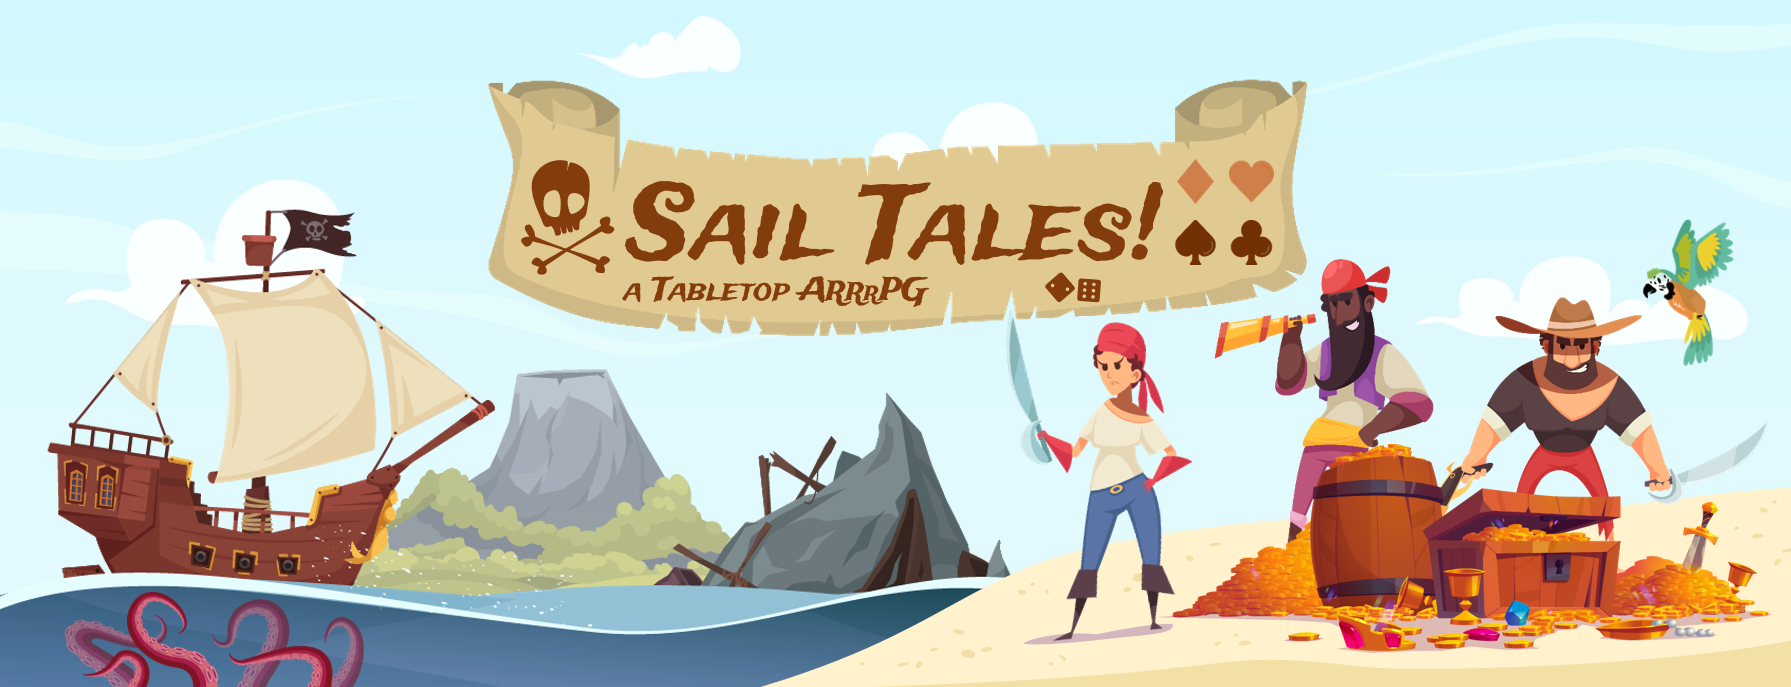 Sail Tales!